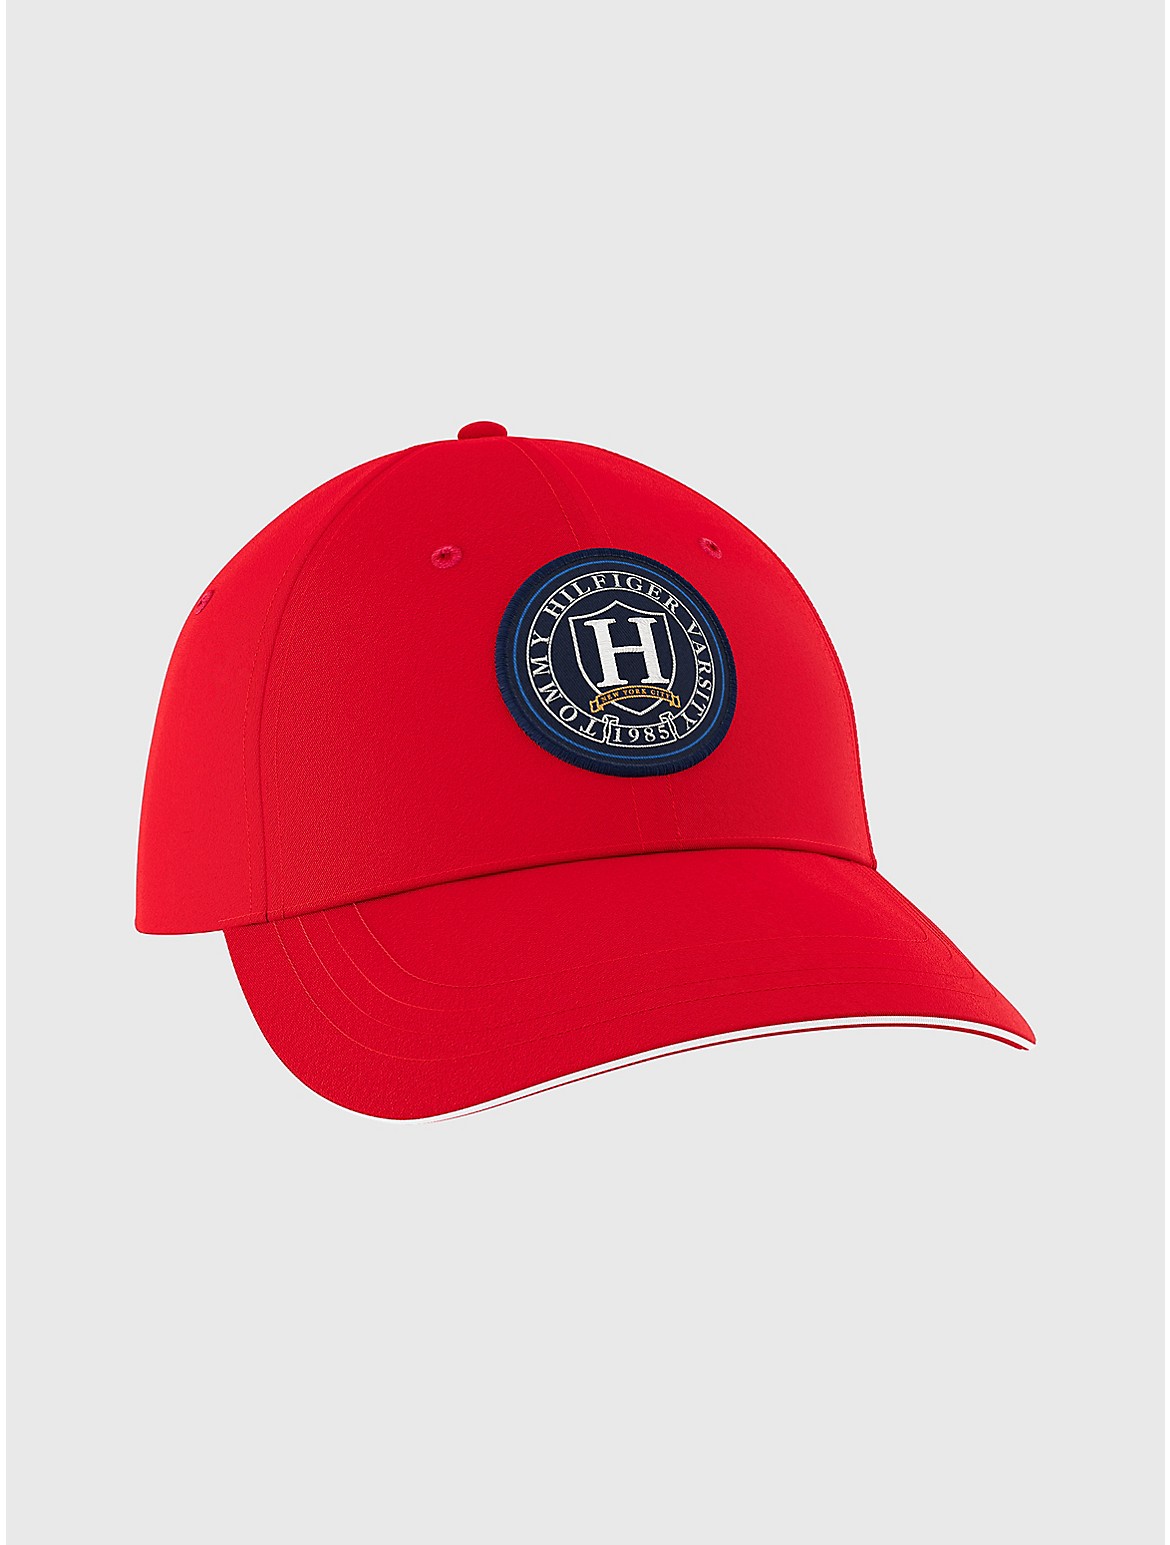 Tommy Hilfiger Men's Hilfiger Crest Baseball Cap - Red